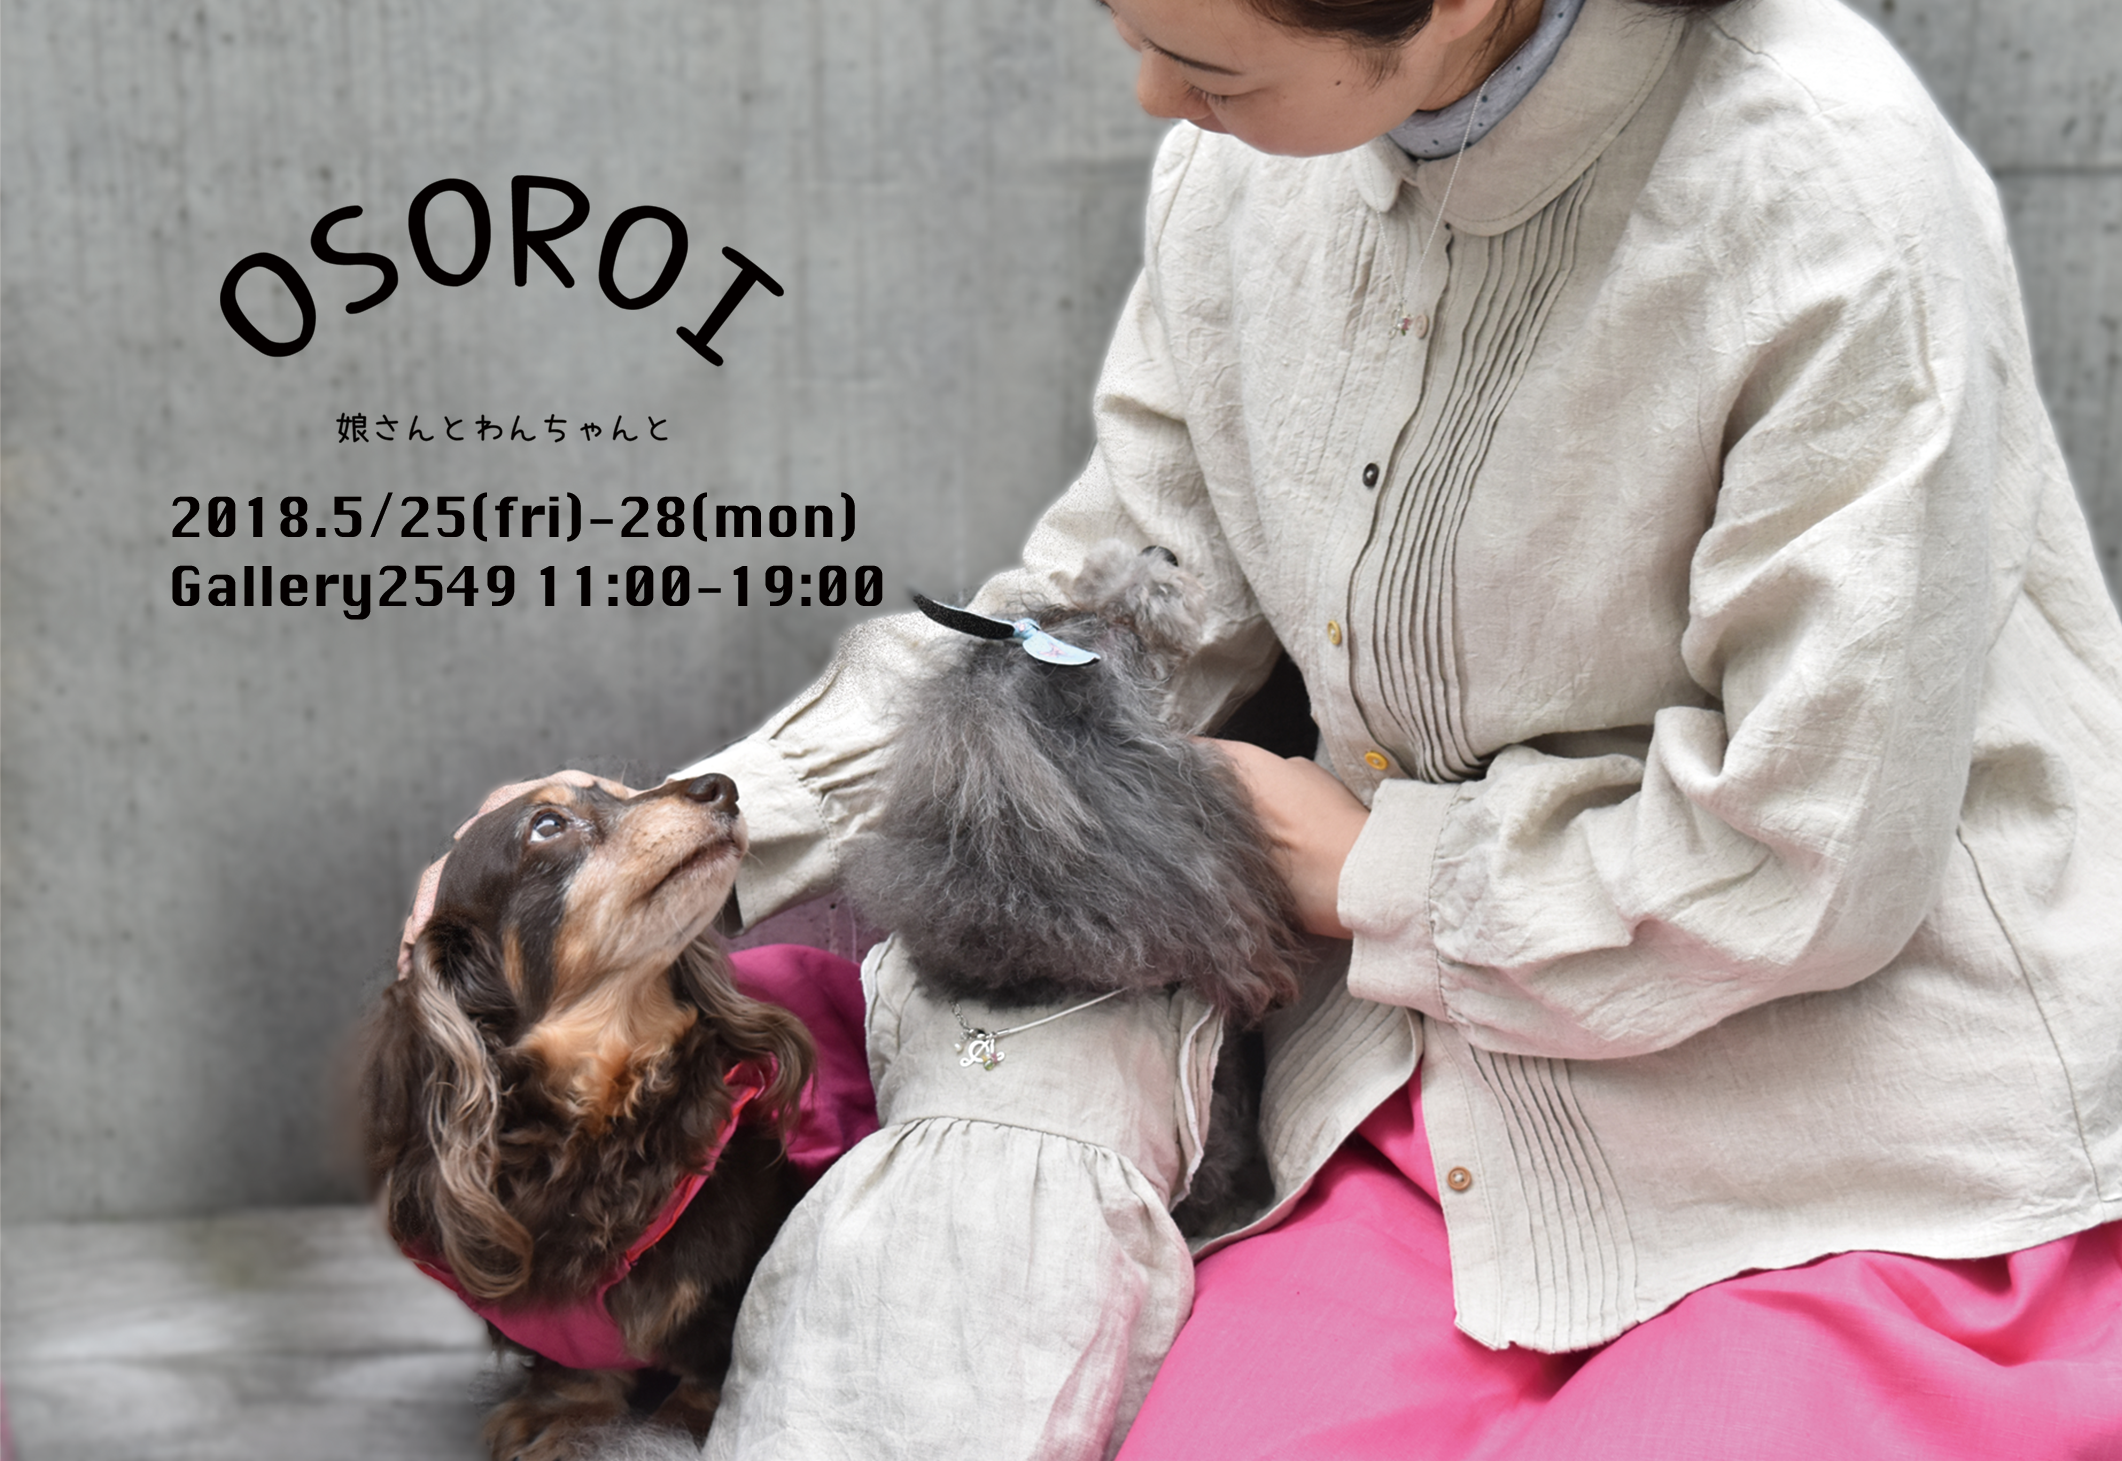 「OSOROI」  初日ありがとうございました。リネン服は、何がいいと思いますか？